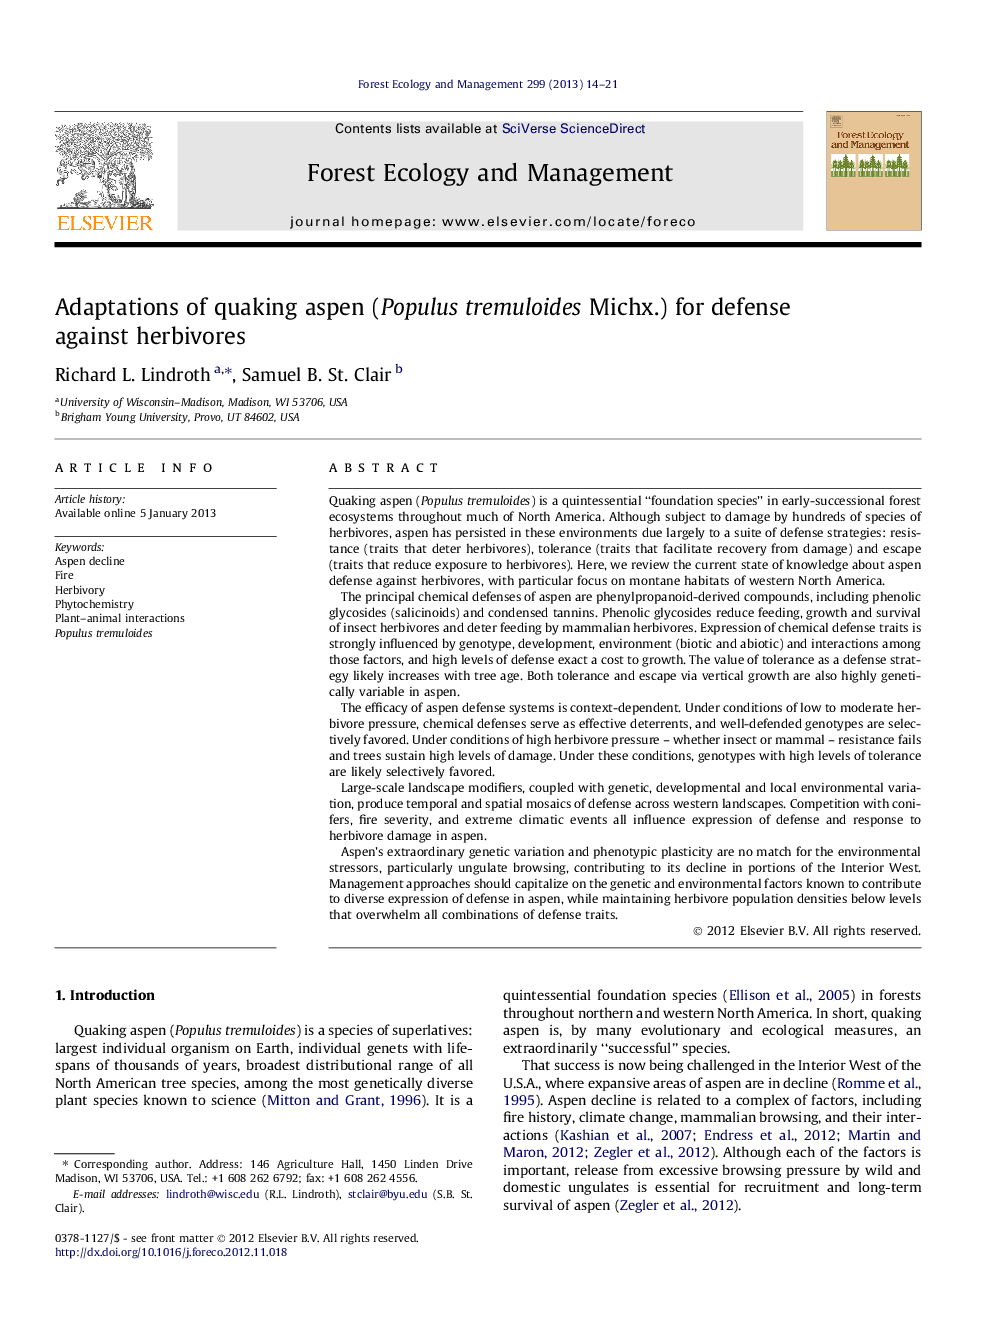 Adaptations of quaking aspen (Populus tremuloides Michx.) for defense against herbivores